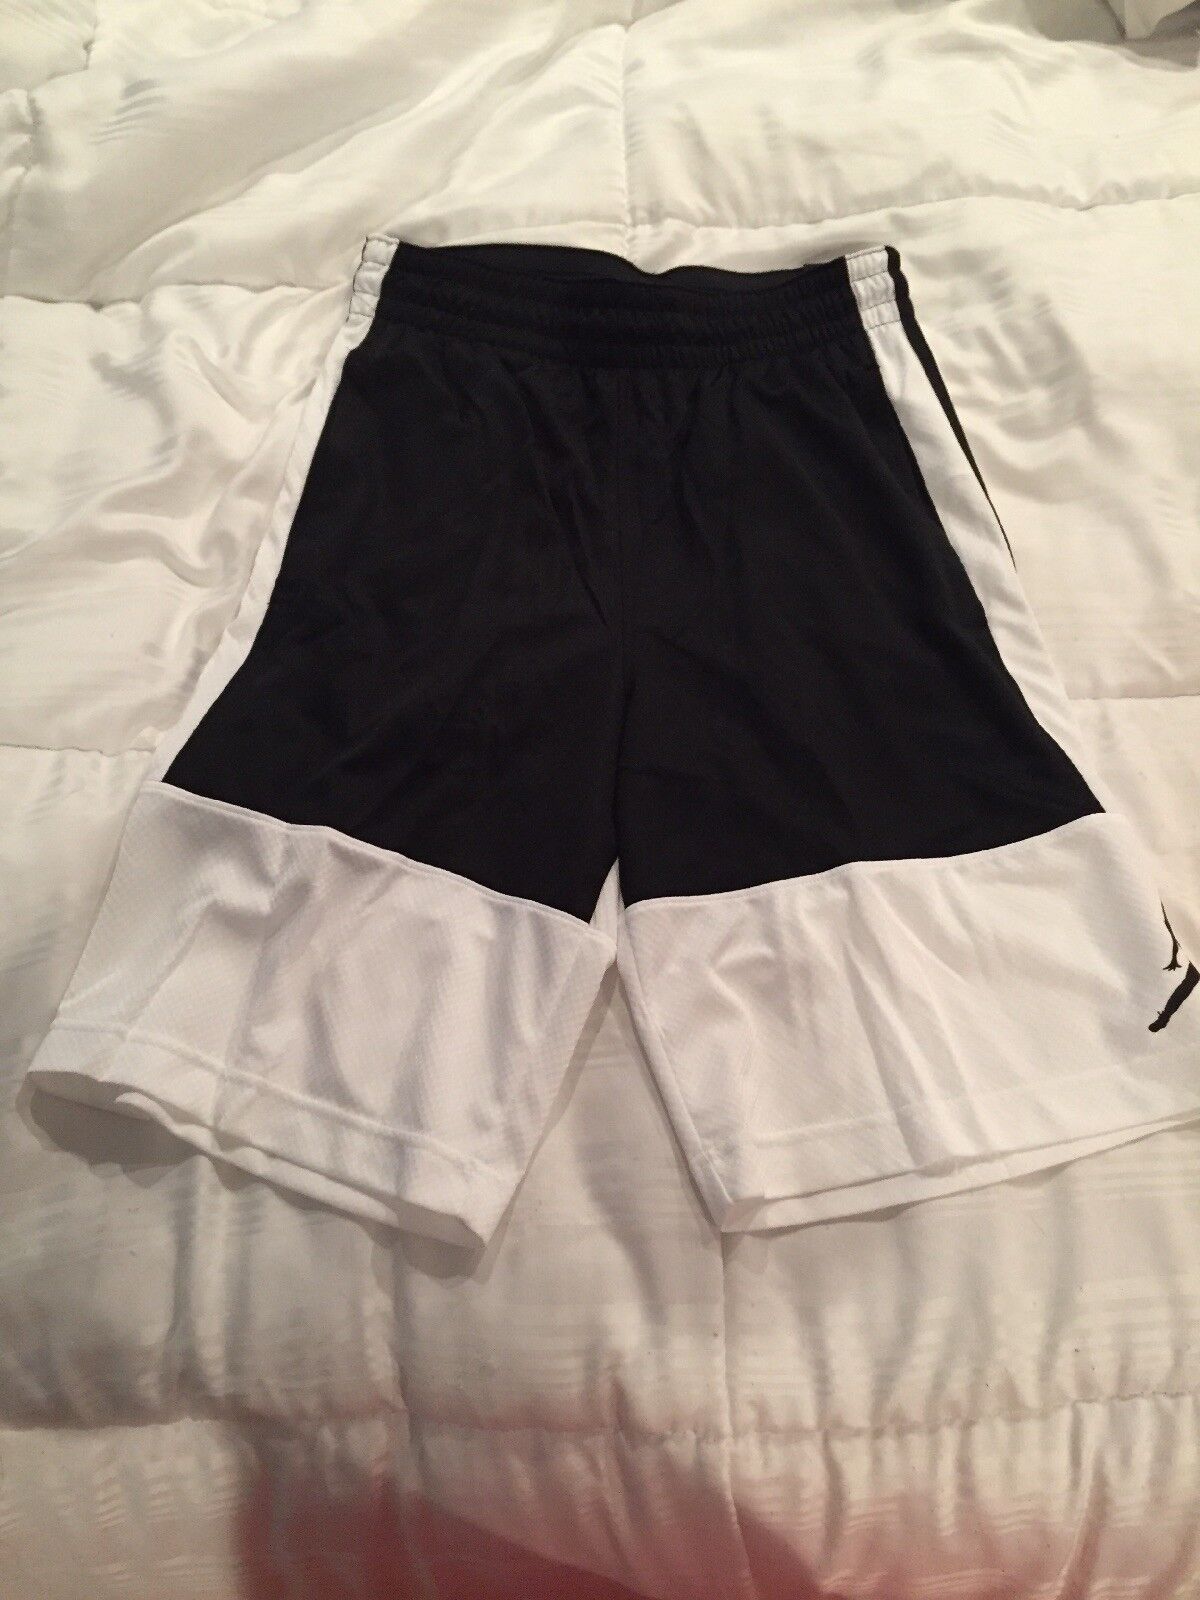 Nike Men's Size 2xl XXL Jordan 10” Basketball Shorts Ar2833 100 